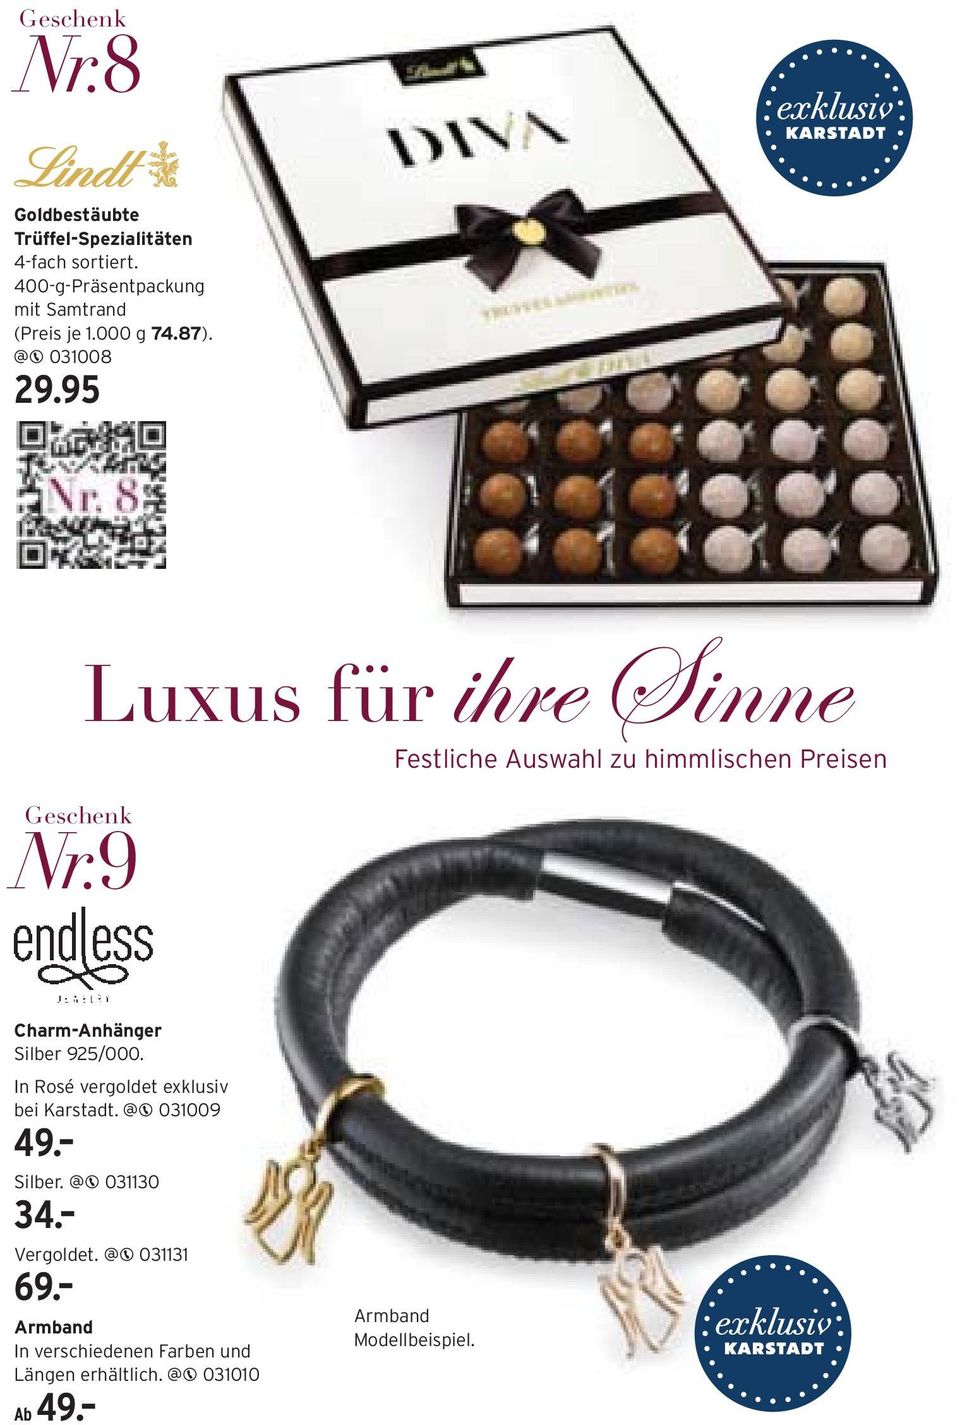 9 Luxus für ihre Sinne Festliche Auswahl zu himmlischen Preisen Charm-Anhänger Silber 925/000.